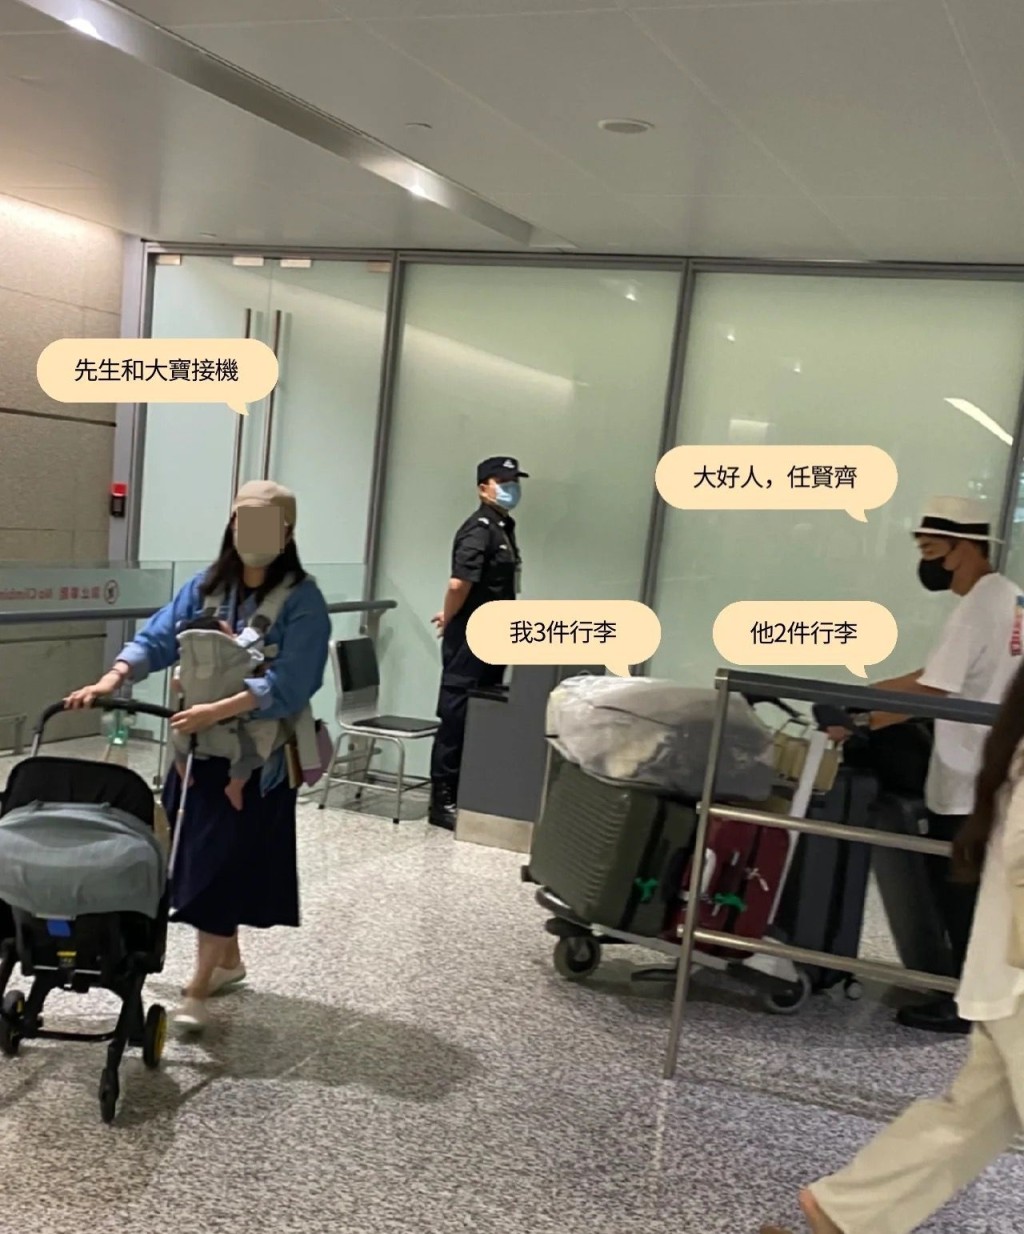 网民指任贤齐在机上帮她拎手提行李，仲陪她等拖运行李兼推出闸口。